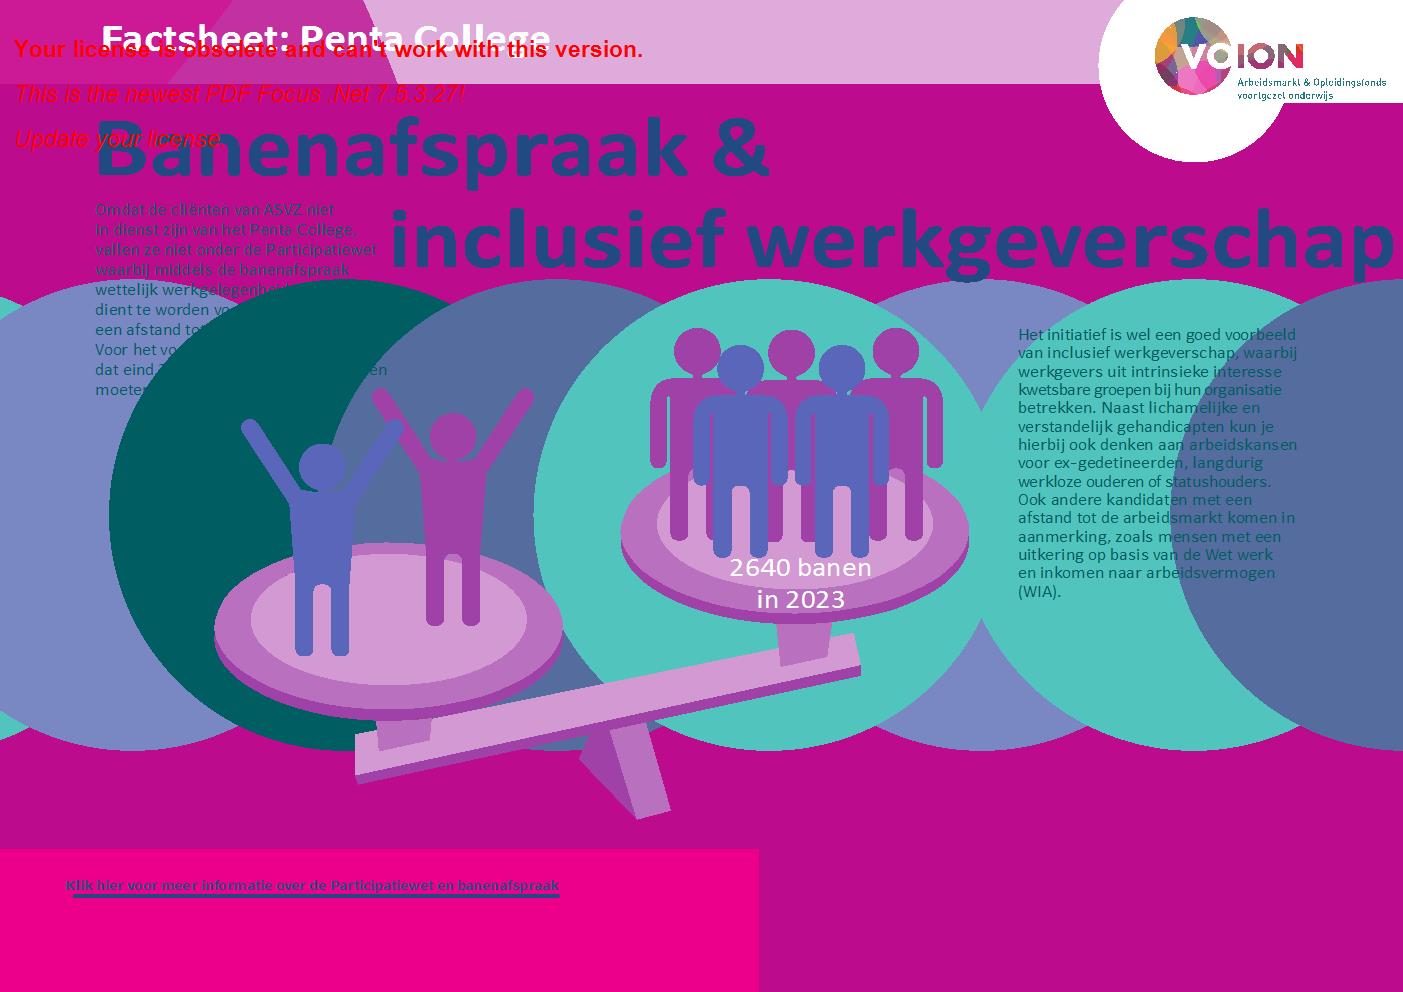 Factsheet Penta College - Meer over de Banenafspraak en inclusief werkgeverschap